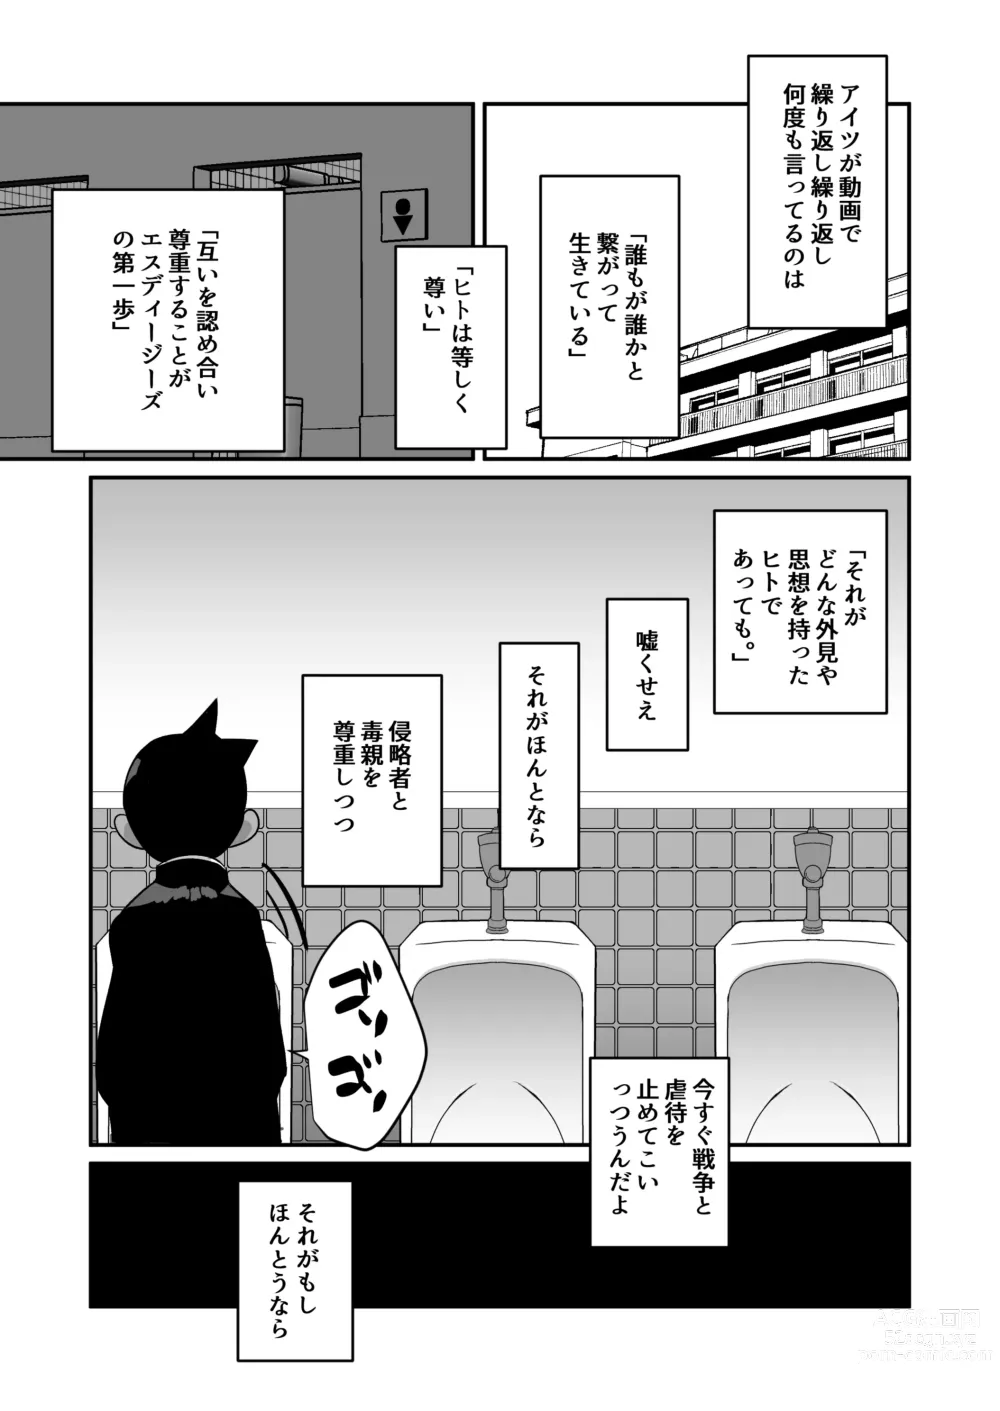 Page 13 of doujinshi Seiyoku no Hanashi.